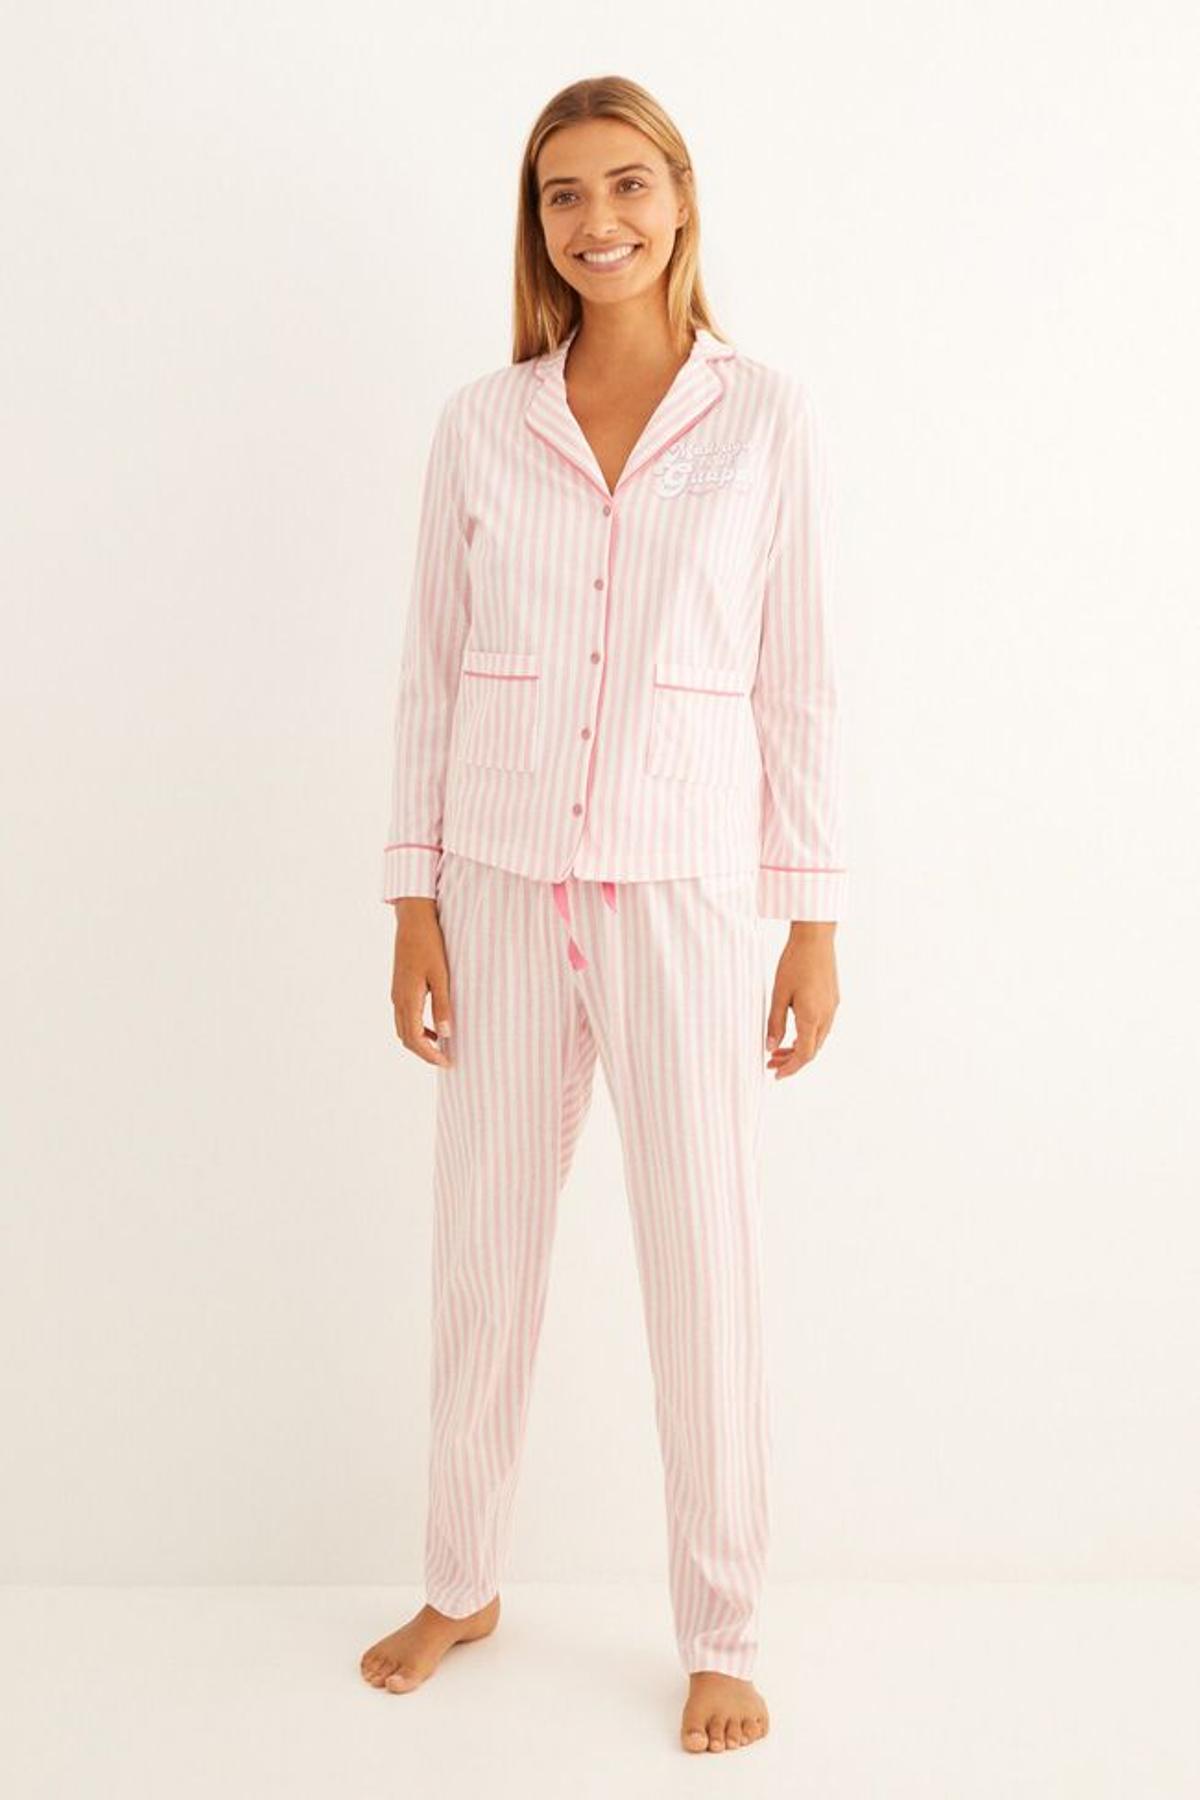 Pijama largo camisero, de la colección de La Vecina Rubia para Women'secret